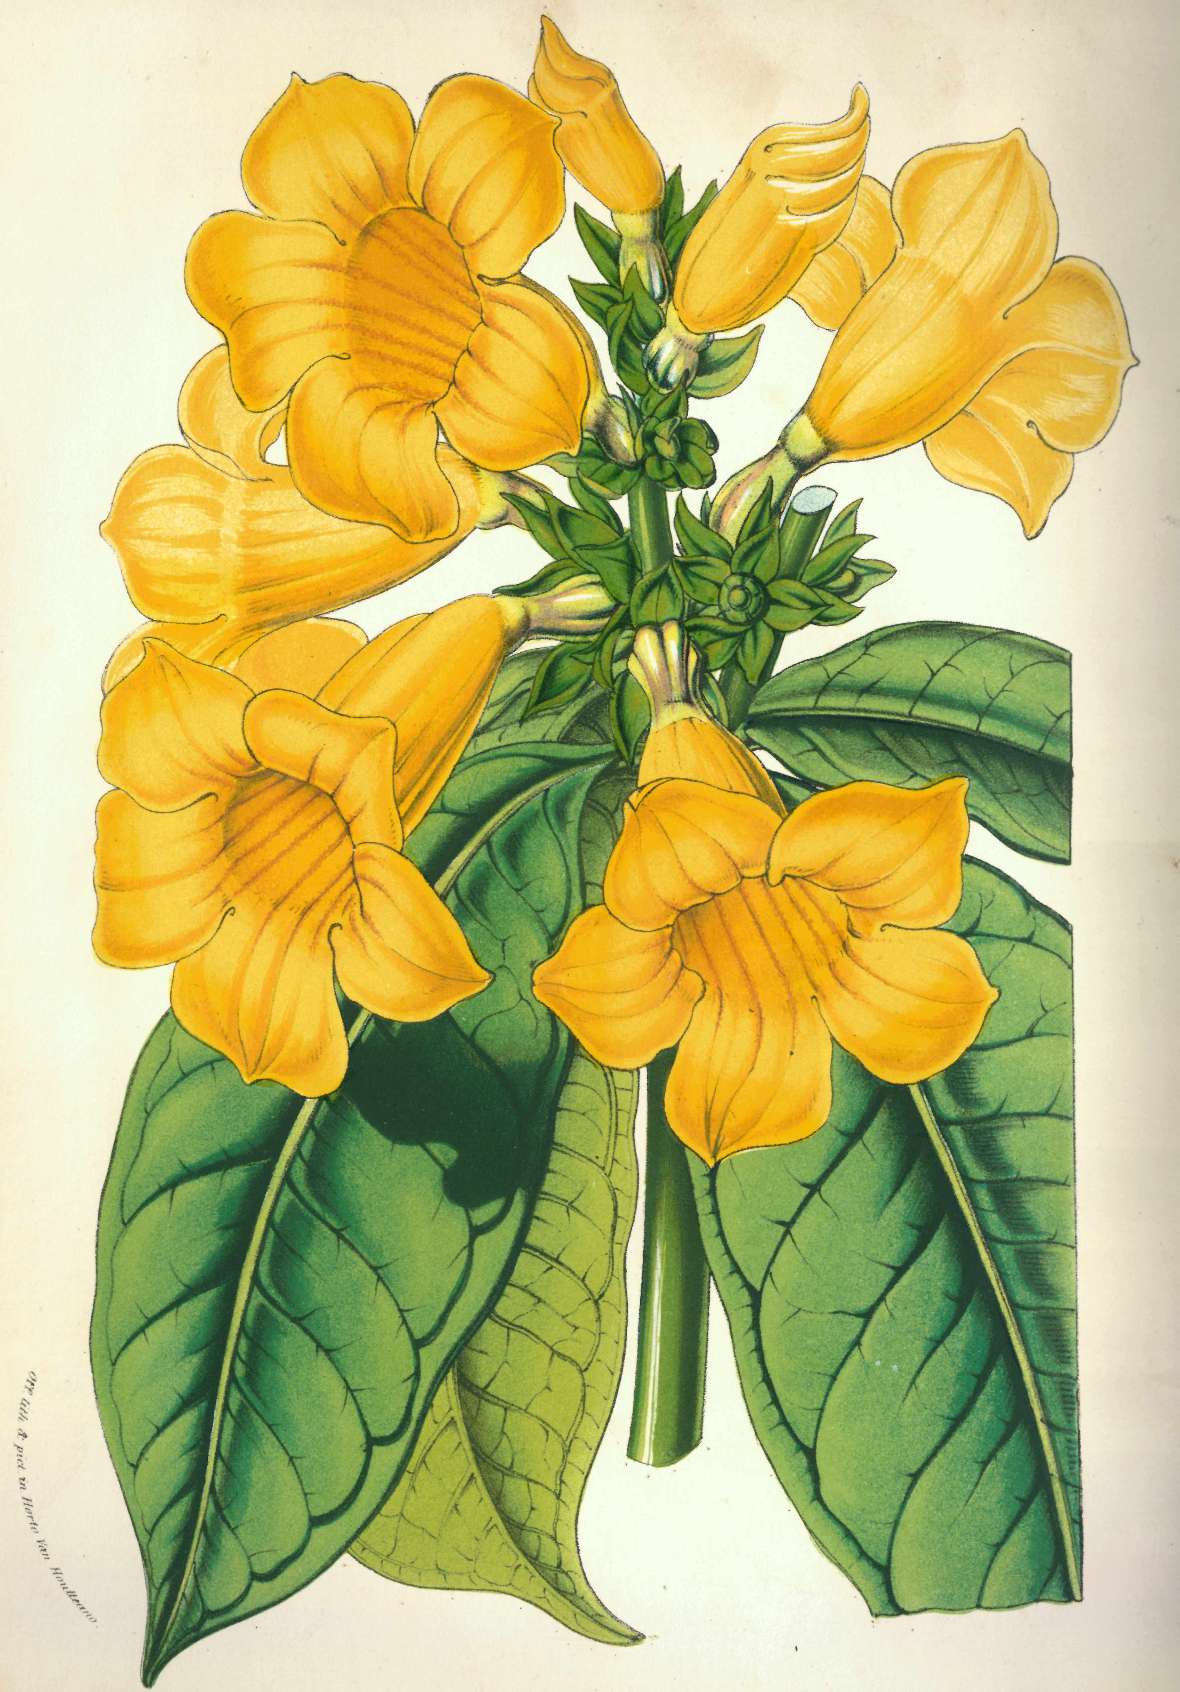 Botanische Zeichnung einer nach Schott benannten brasilianischen Strauch-Goldtrompete